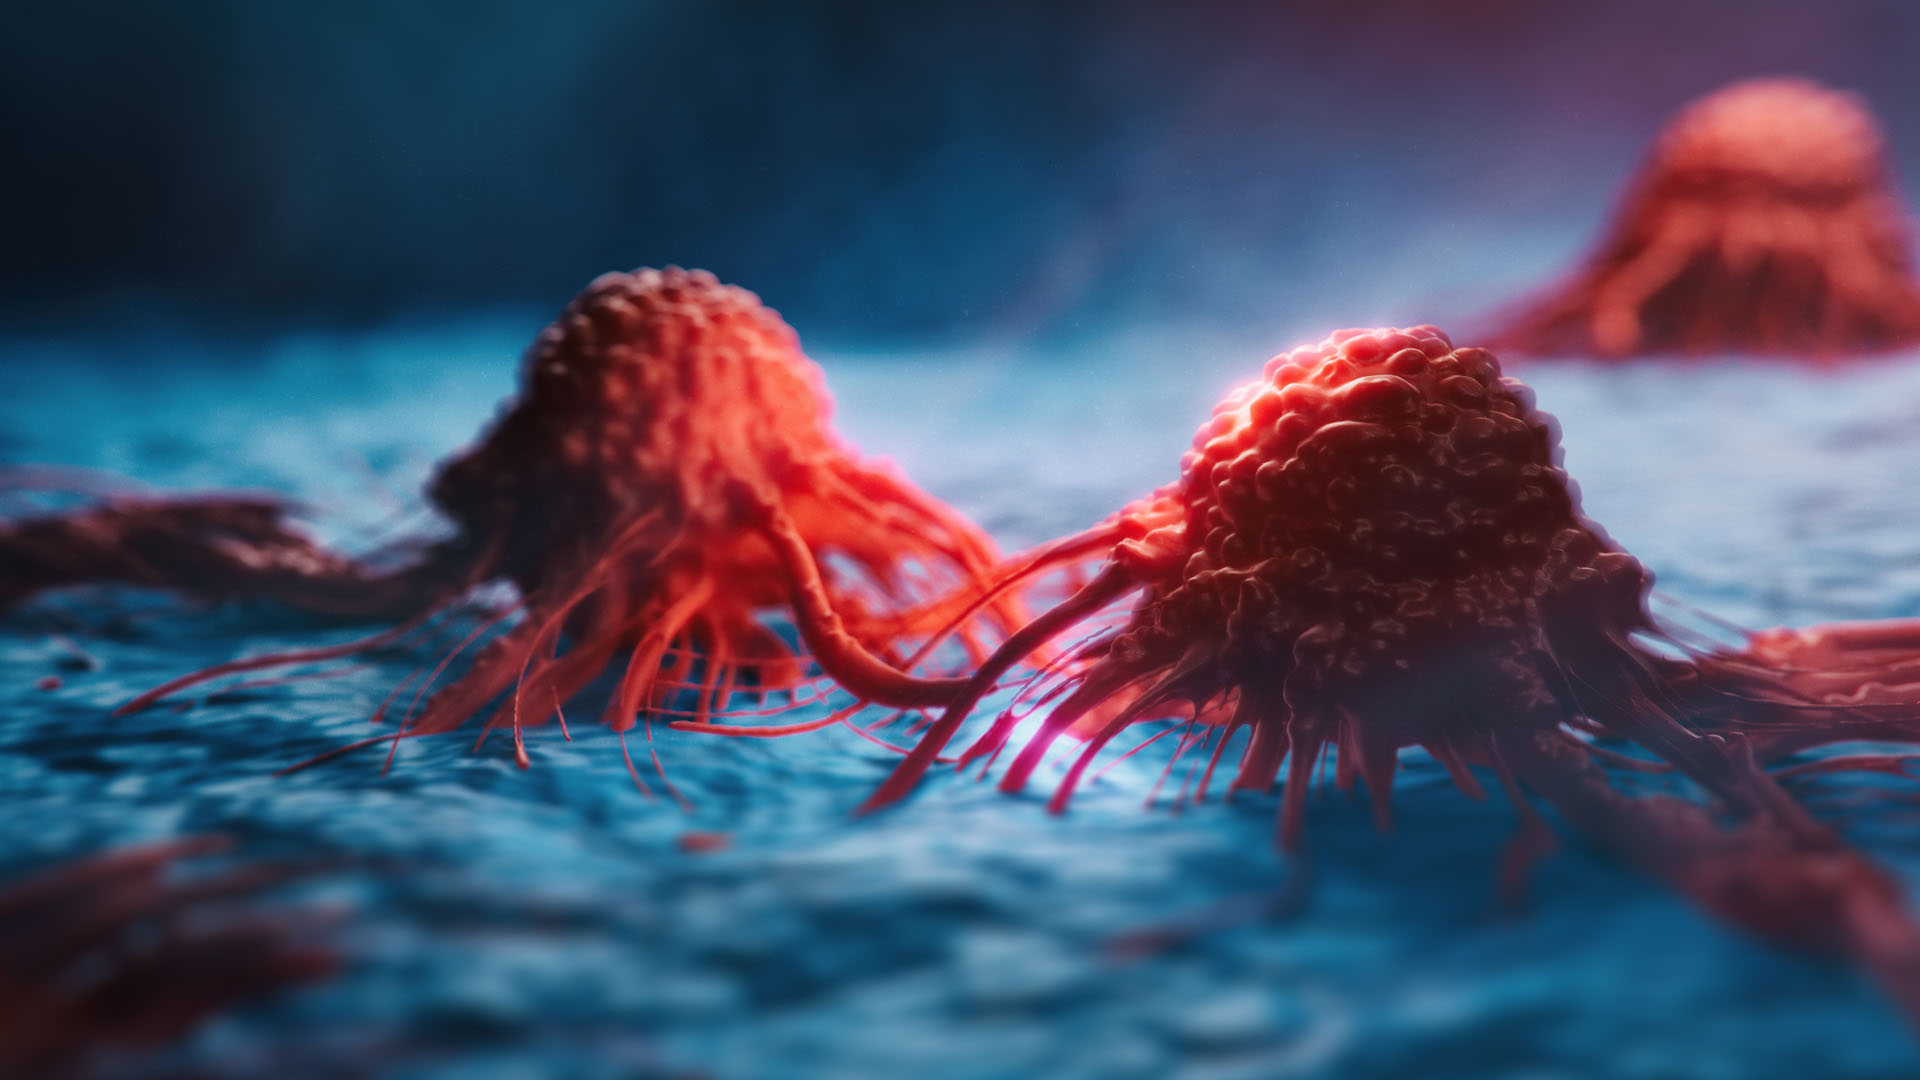 Identifying a Biomarker for Metastasis